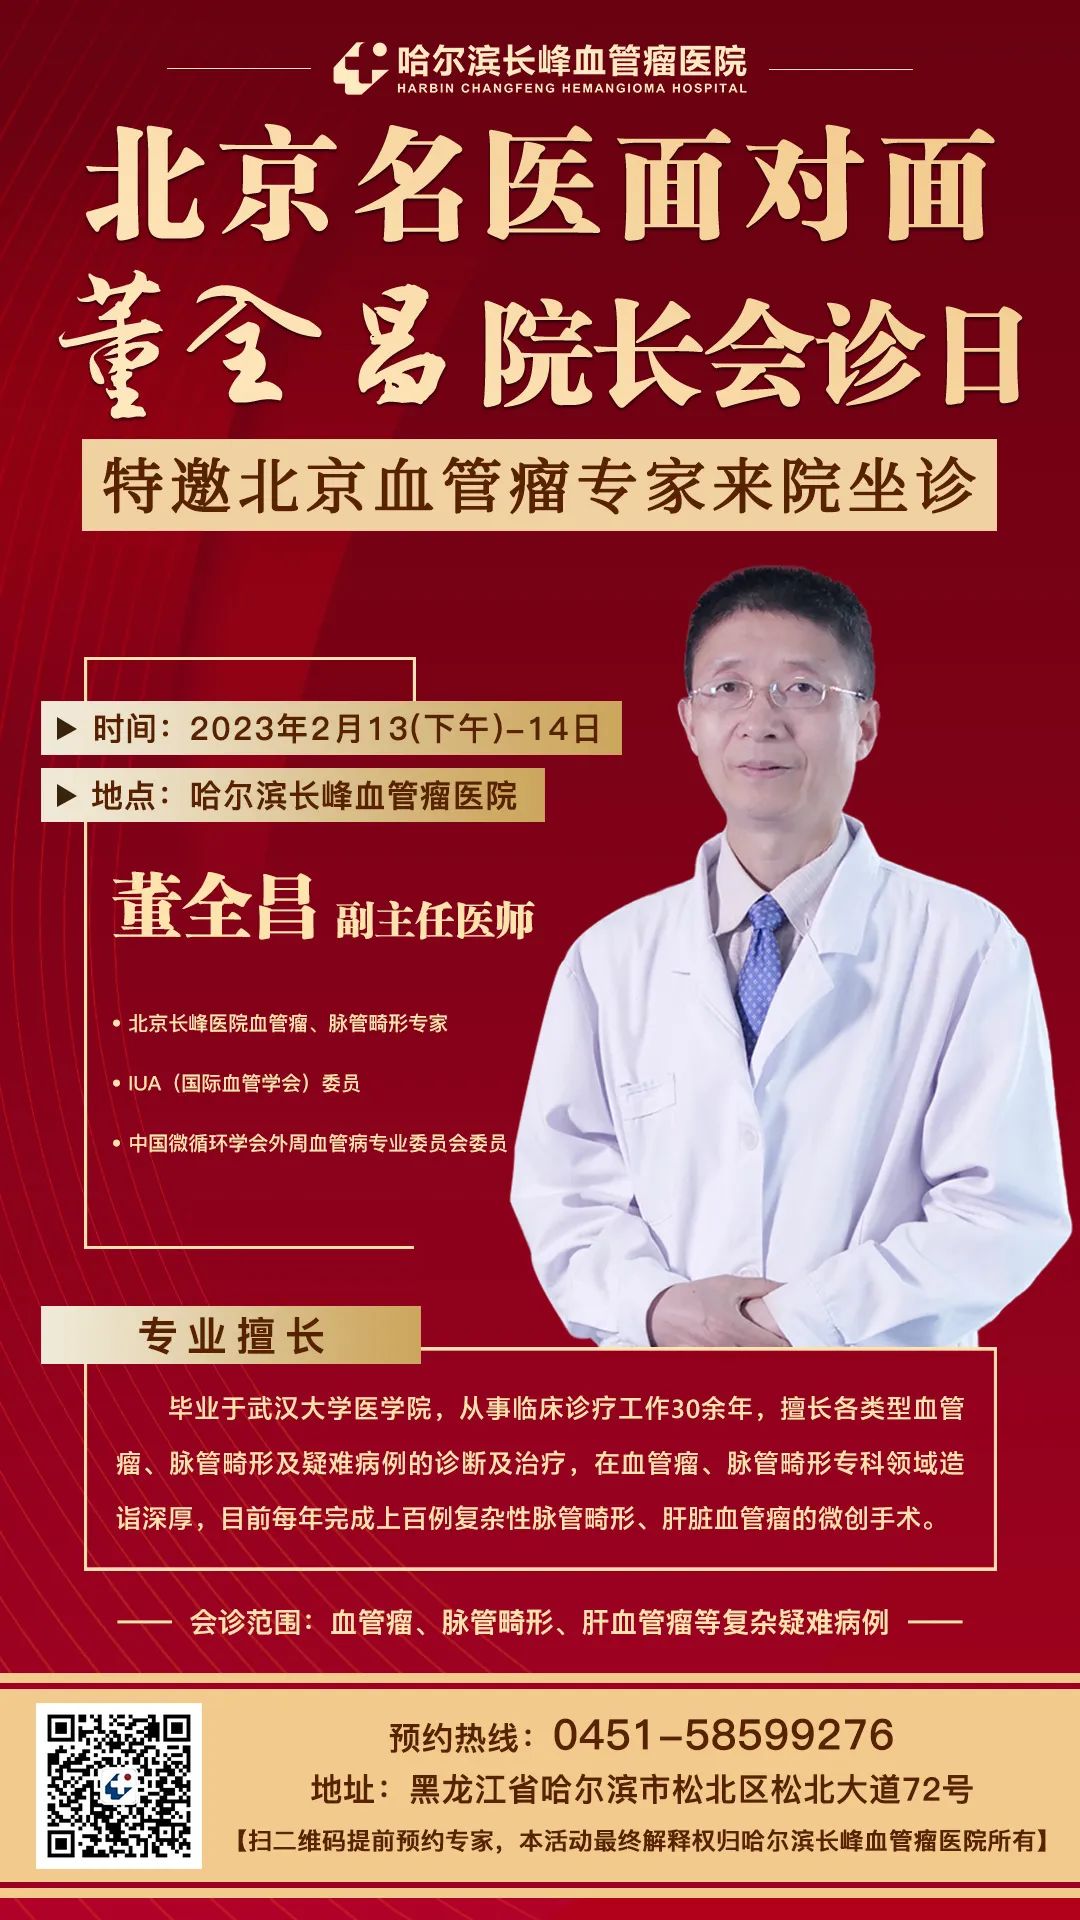 广西看血管瘤医院-南宁长峰中医医院开展常态化质控检查 - 哔哩哔哩